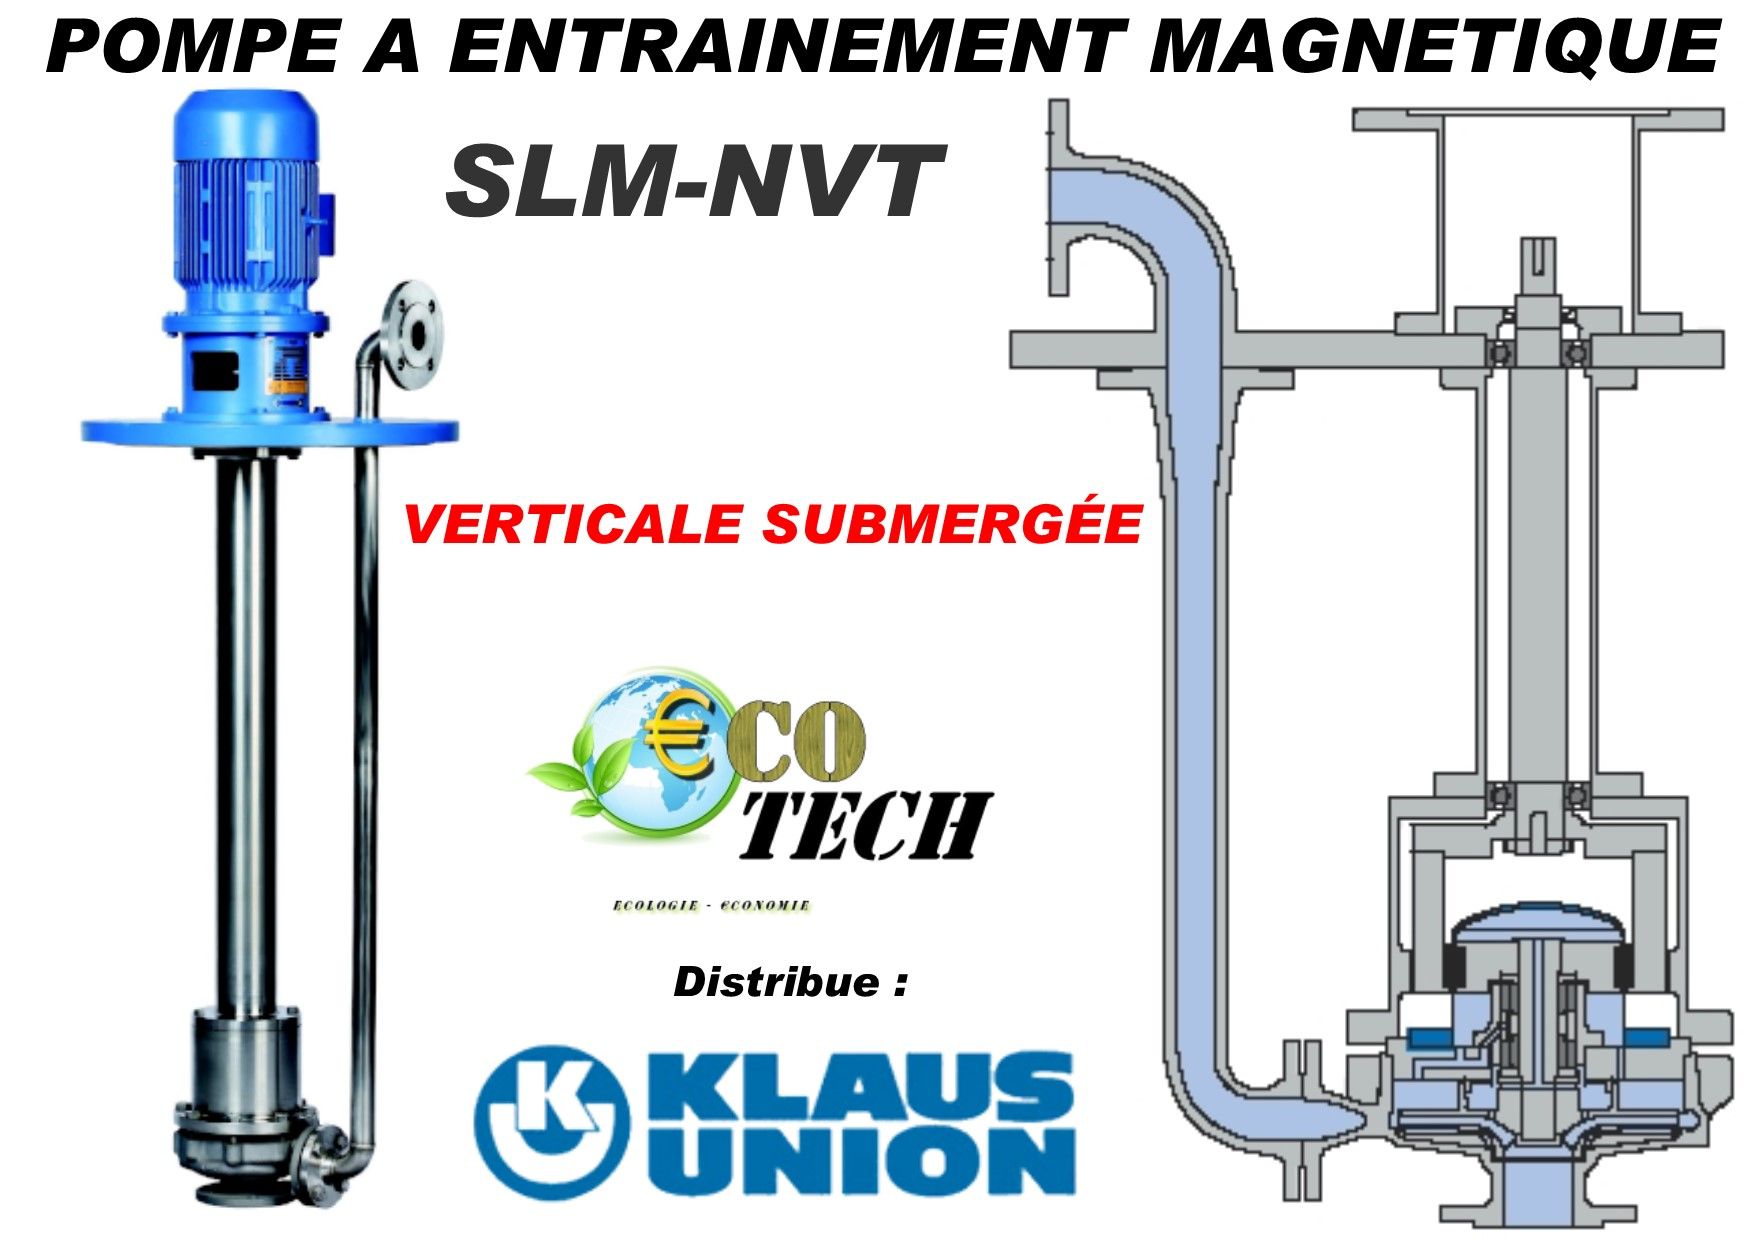 Pompe verticale slm-nvt klaus union à entrainement magnétique normandie france